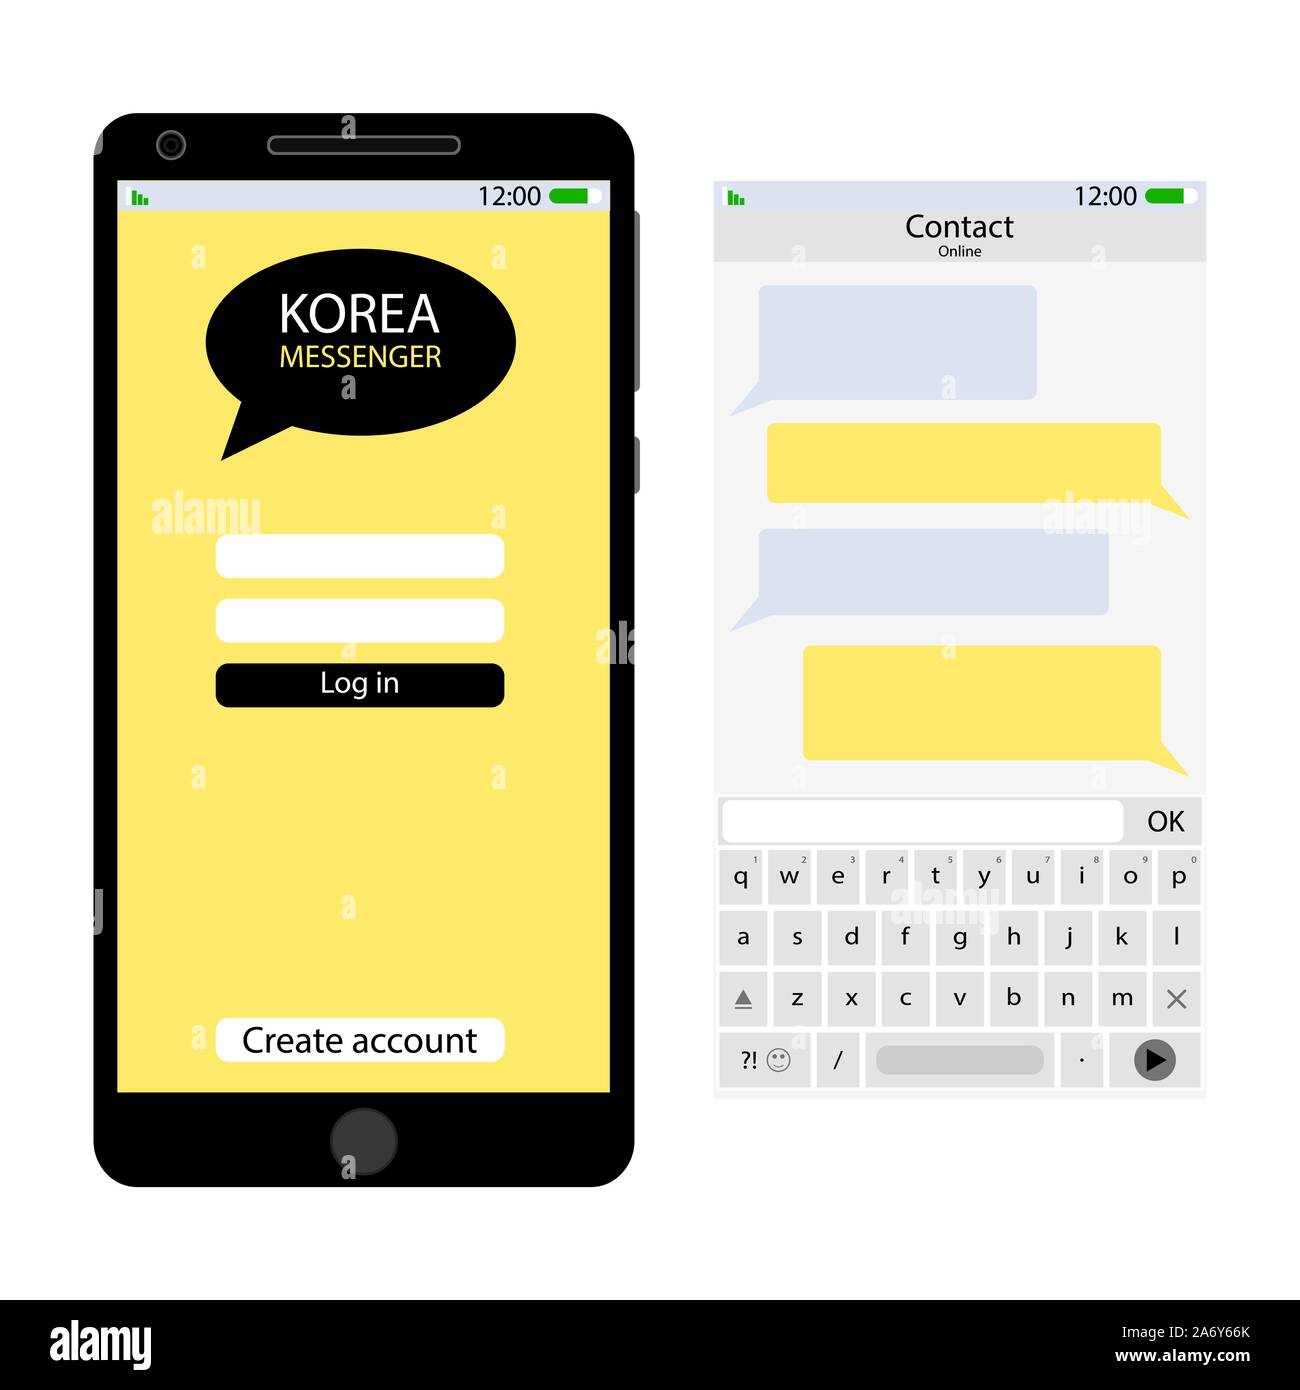 Corée messenger interface utilisateur. Corée messenger app de communication, de dialogue et de chat communiquer écran, vector illustration, chat asiatique kakao talk Illustration de Vecteur